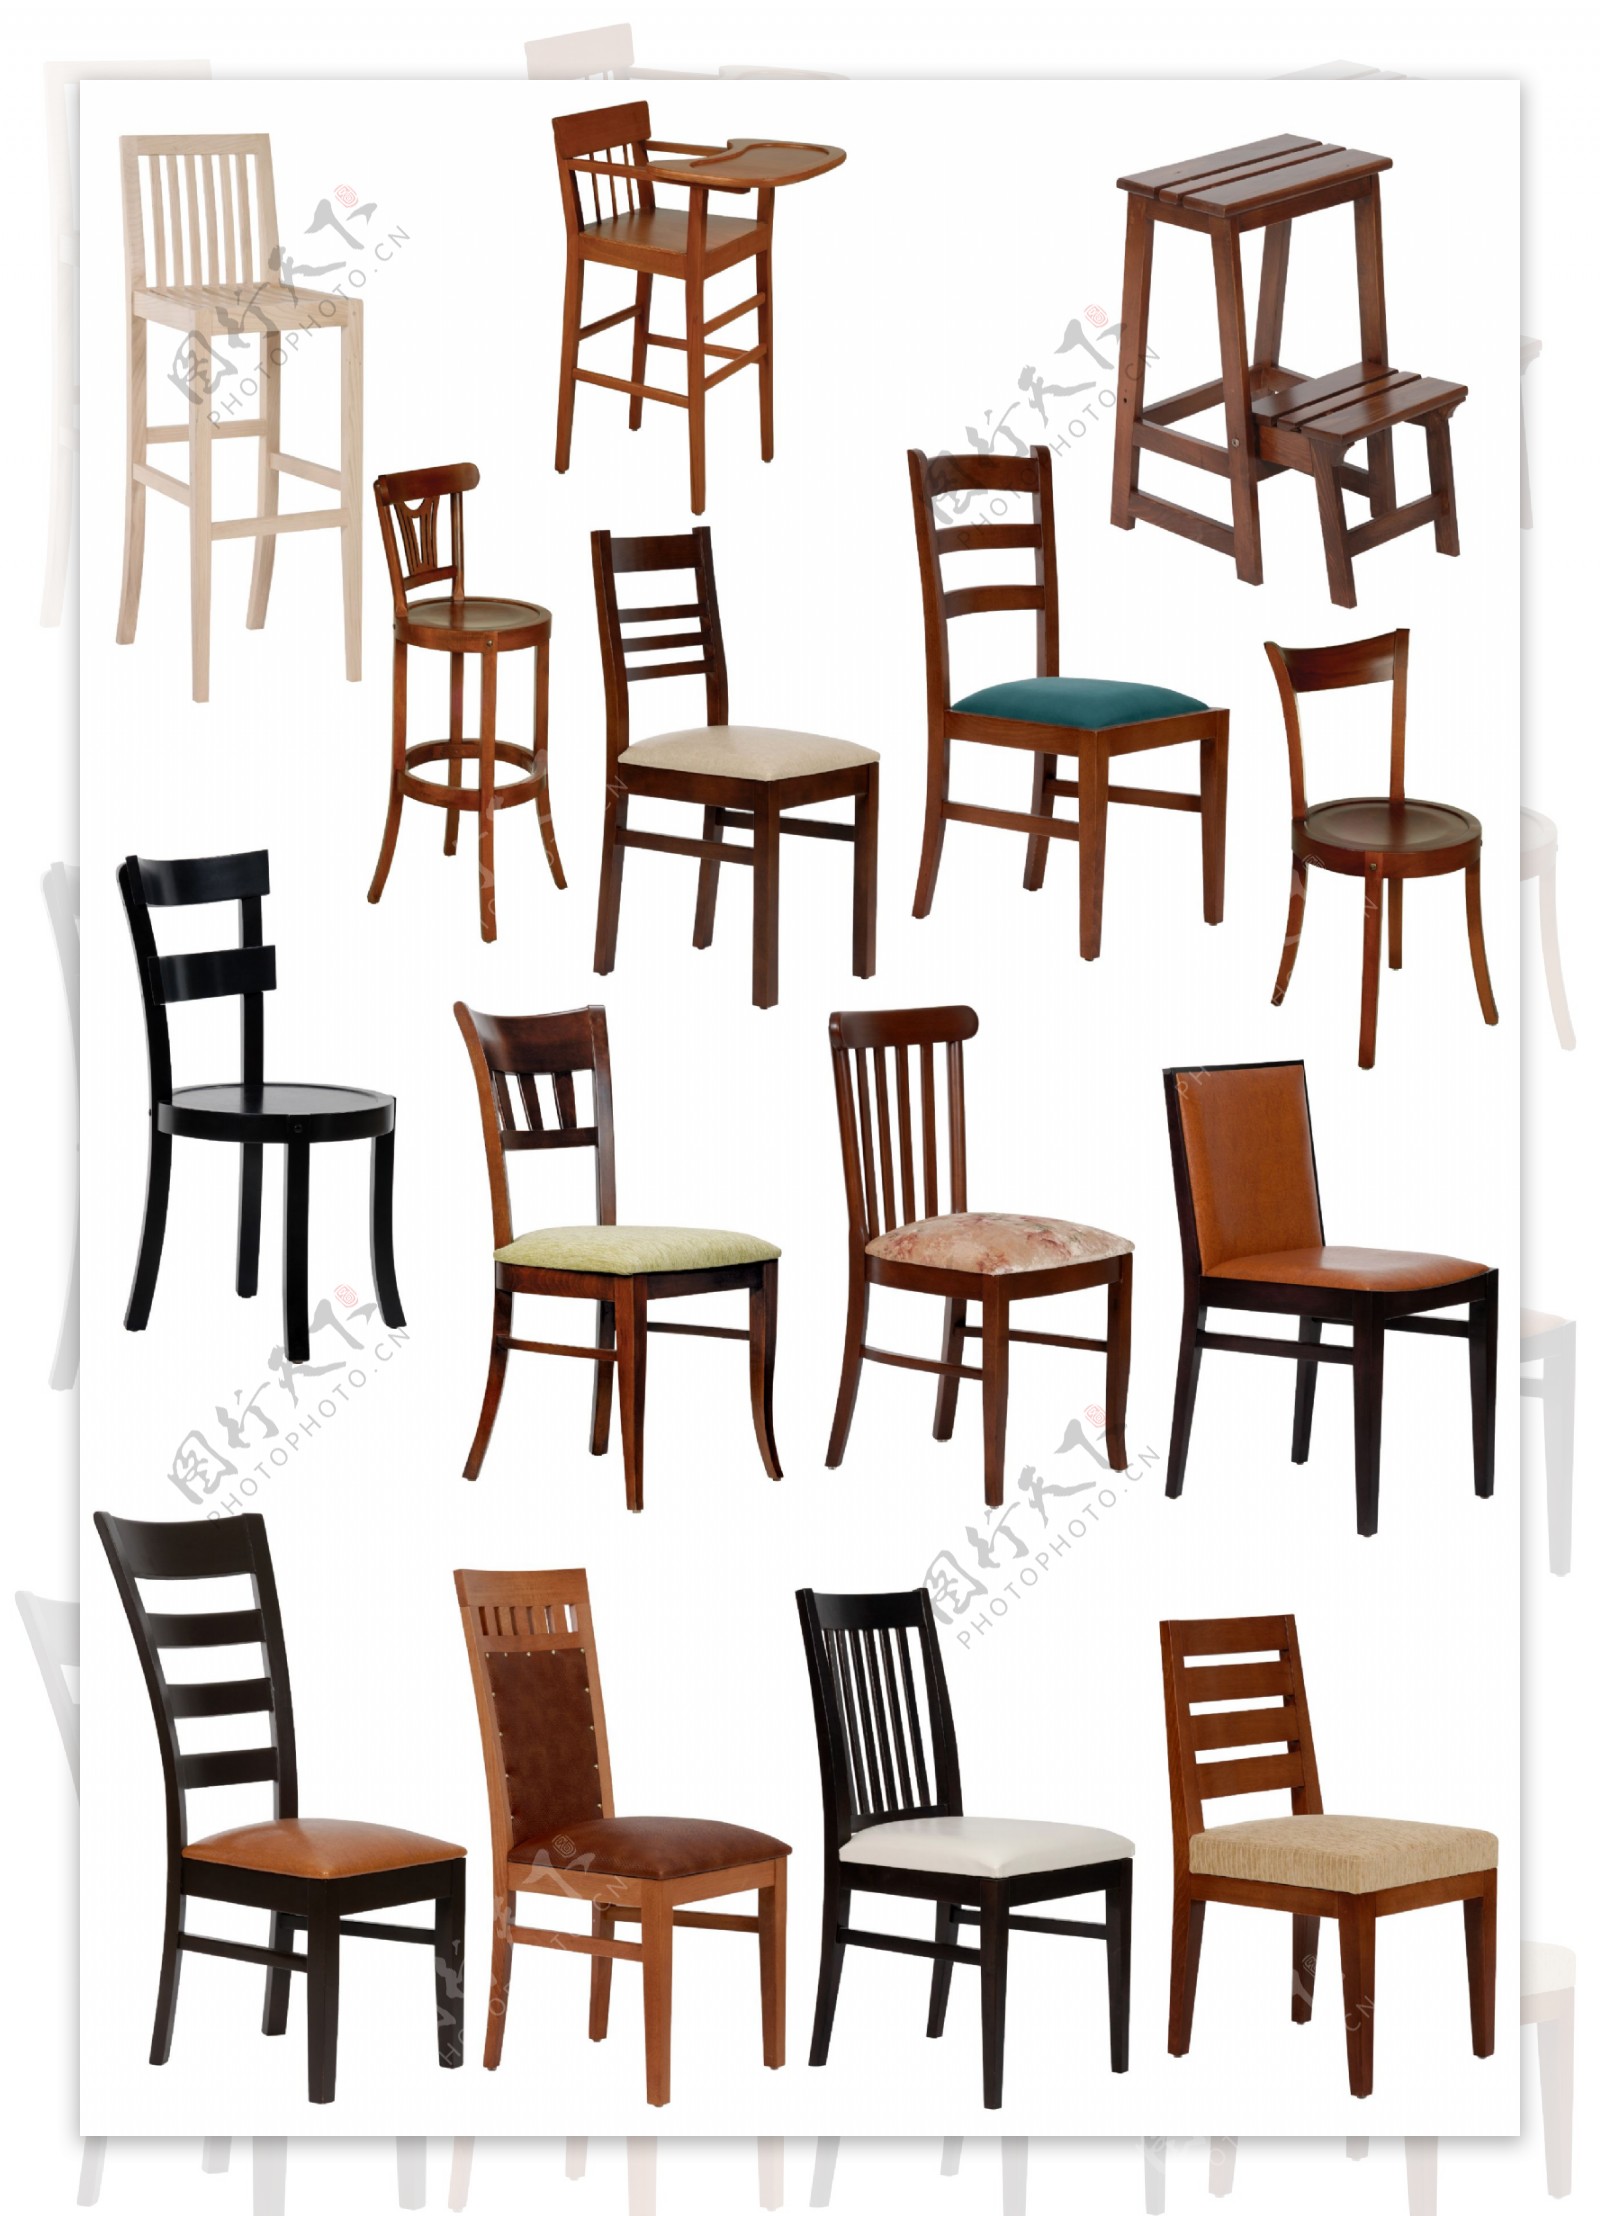 15款欧式椅子图片